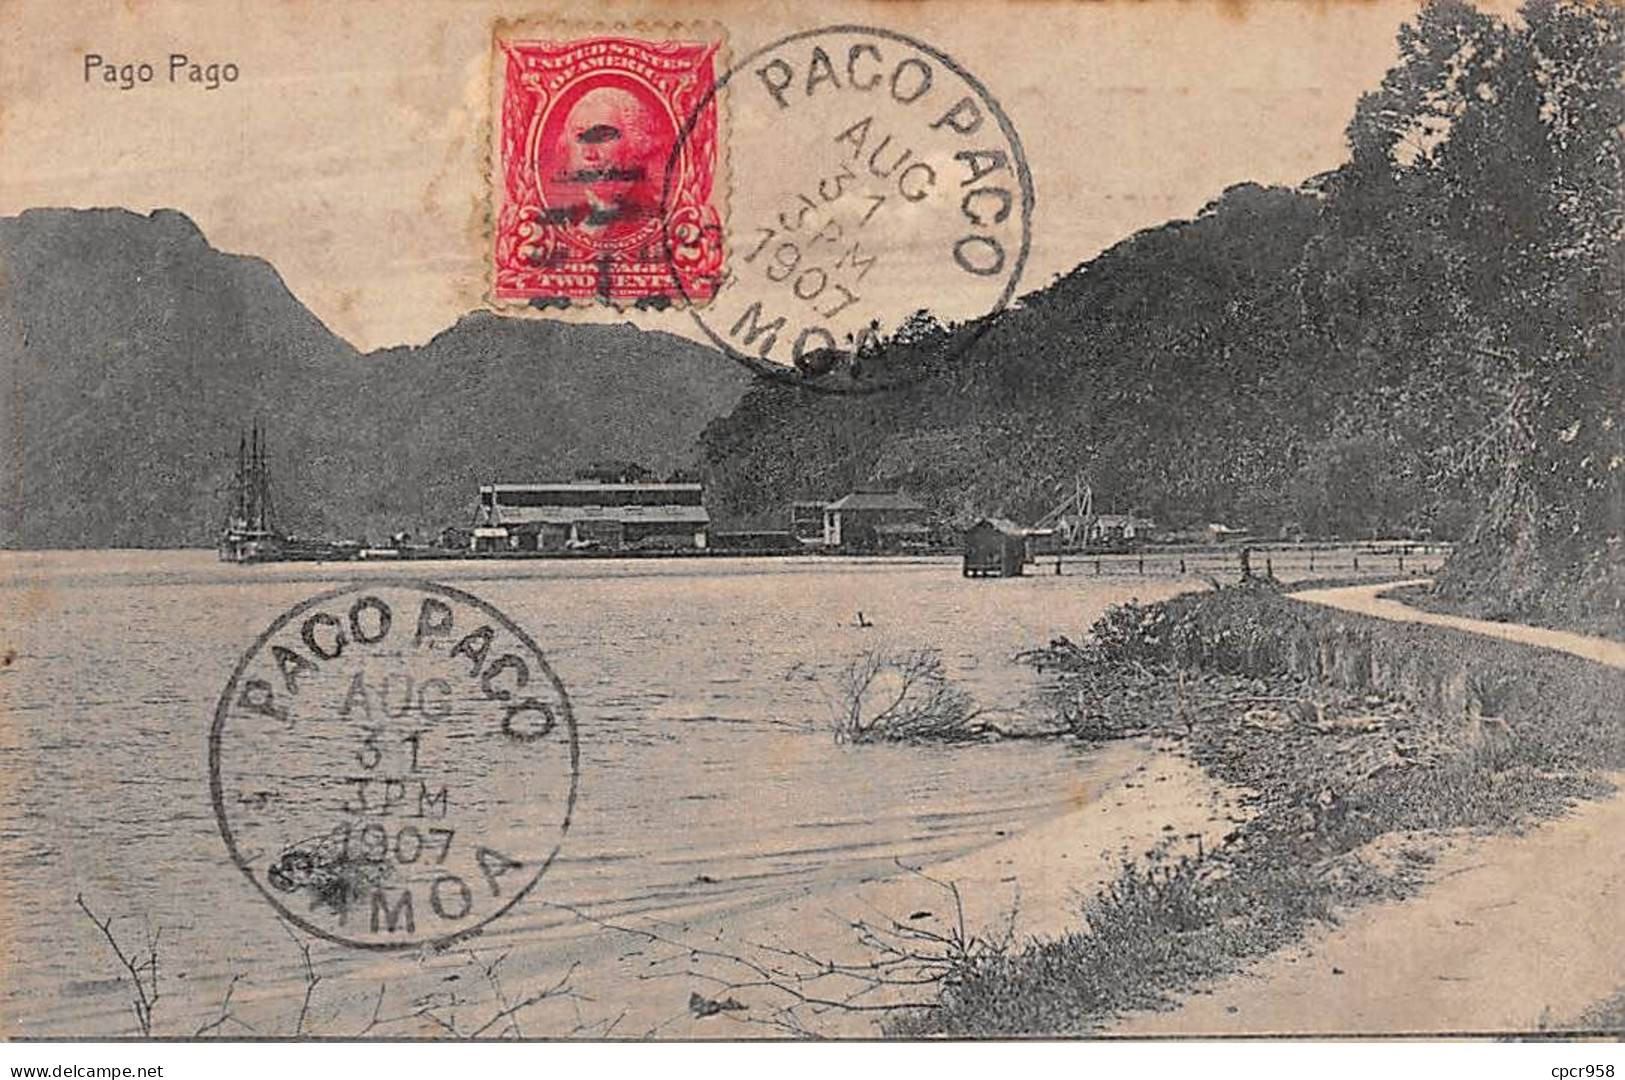 Samoa Américaine - N°78740 - Pago Pago - AFFRANCHISSEMENT DE COMPLAISANCE - American Samoa